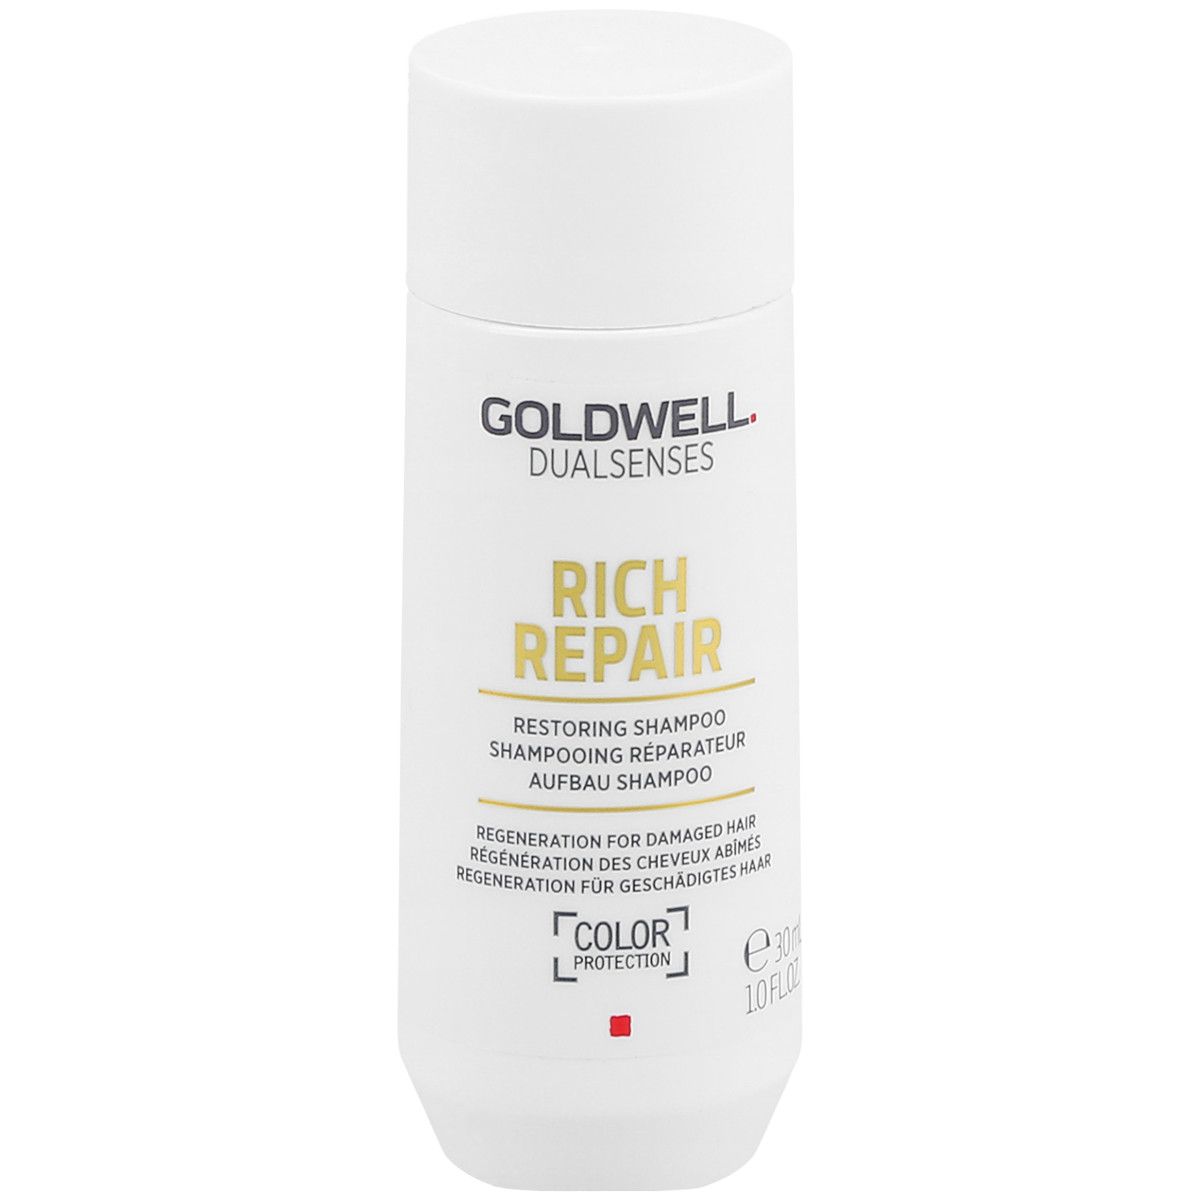 Goldwell Dualsenses Rich Repair Shampoo - szampon regenerujący włosy, 30ml